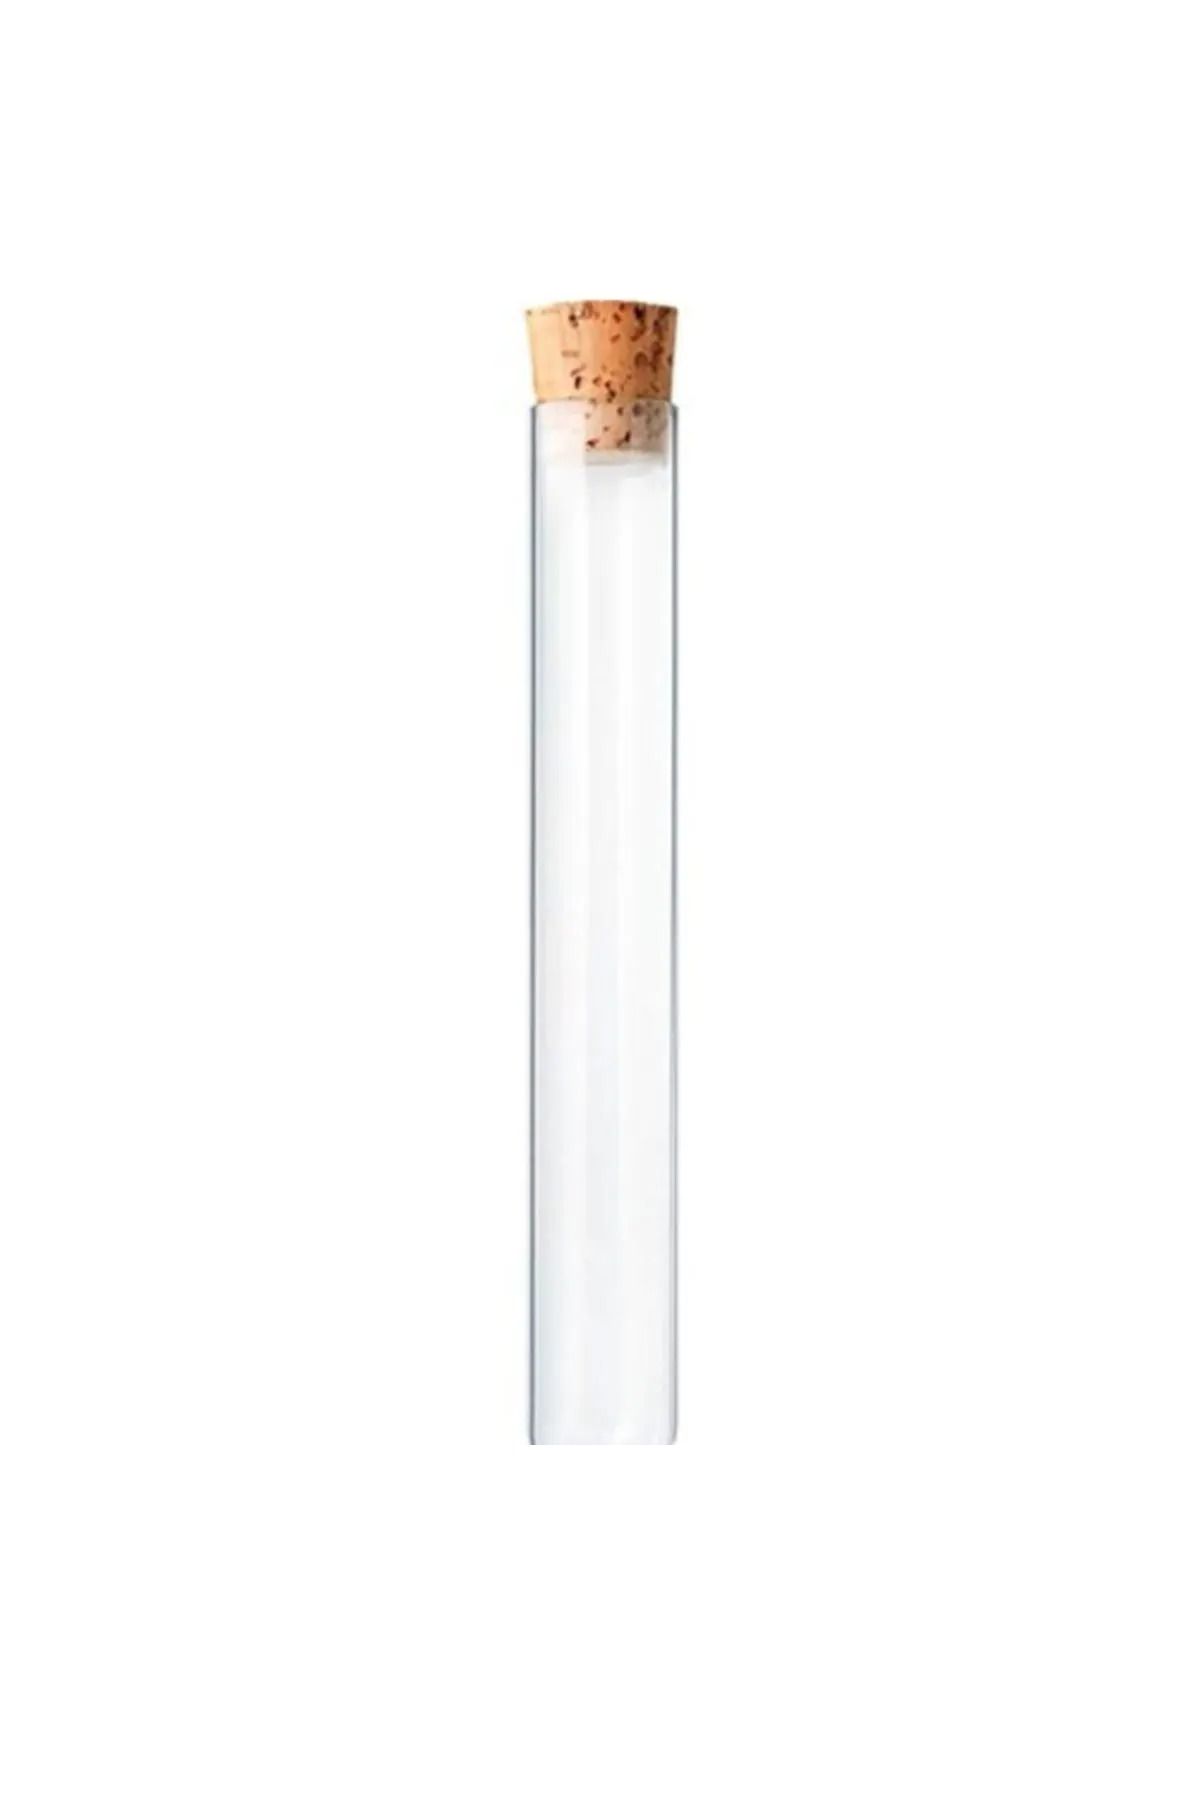 DODOPAZAR Mantar Tıpalı Dibi Düz Cam Şişe Deney Tüpü Şişe Boyu 10cm Ağzı 1.2cm 30 Adet